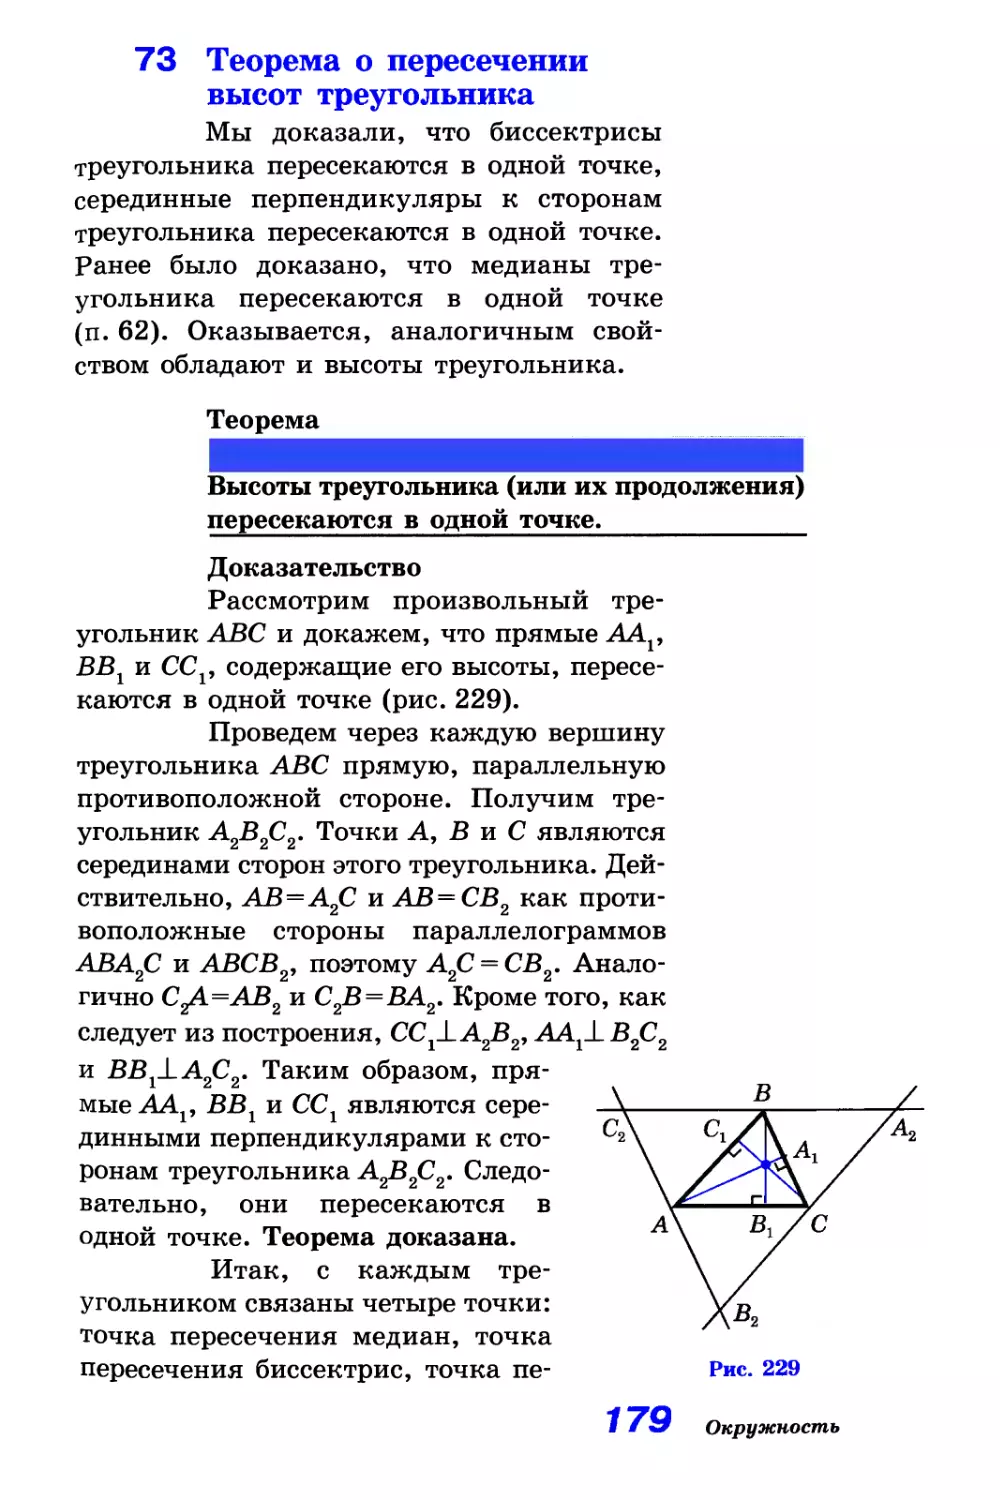 73. Теорема о пересечении высот треугольника